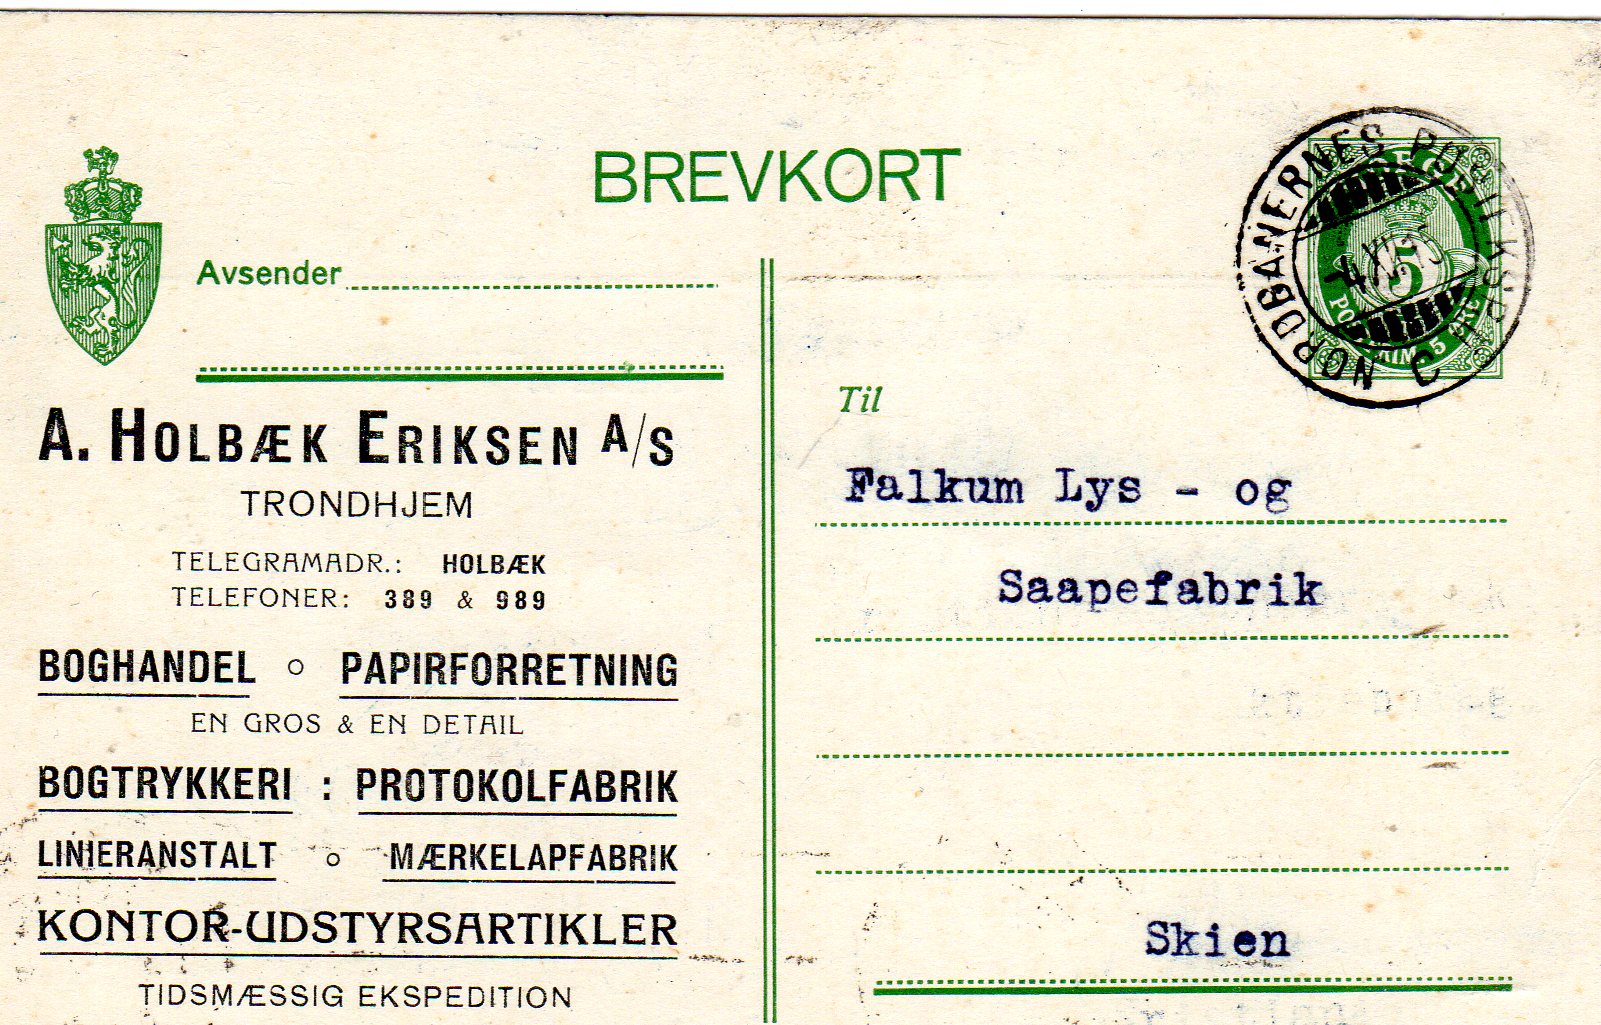  Hk99 St Nordbanernes posteksp 1915 A Holbæk Eriksen